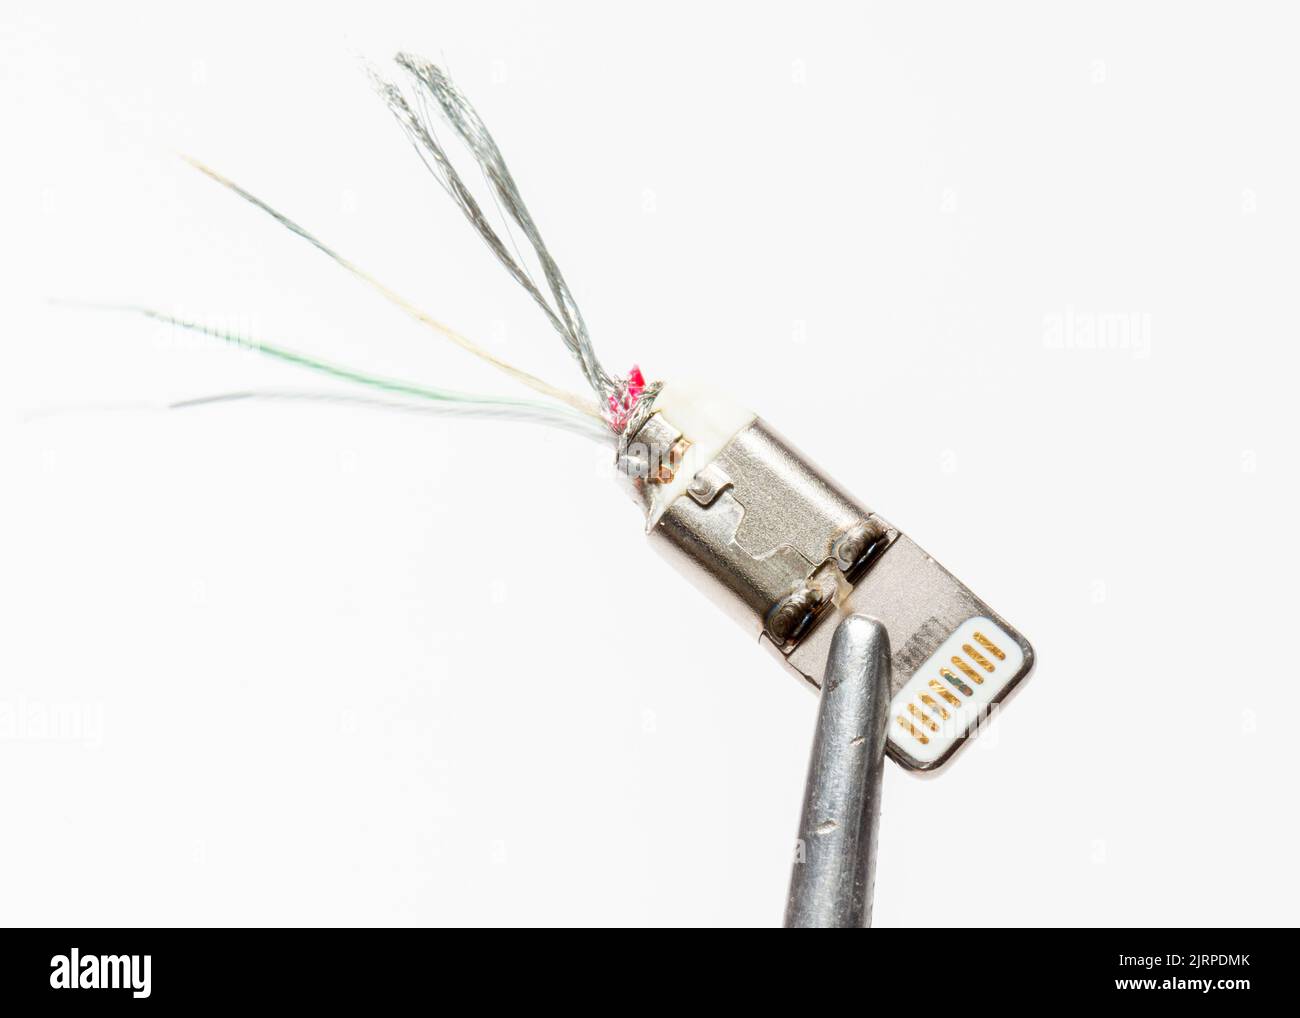 Beschädigtes Stromkabel des Apple iPhone Lightning-Anschlusses auf Weiß Stockfoto